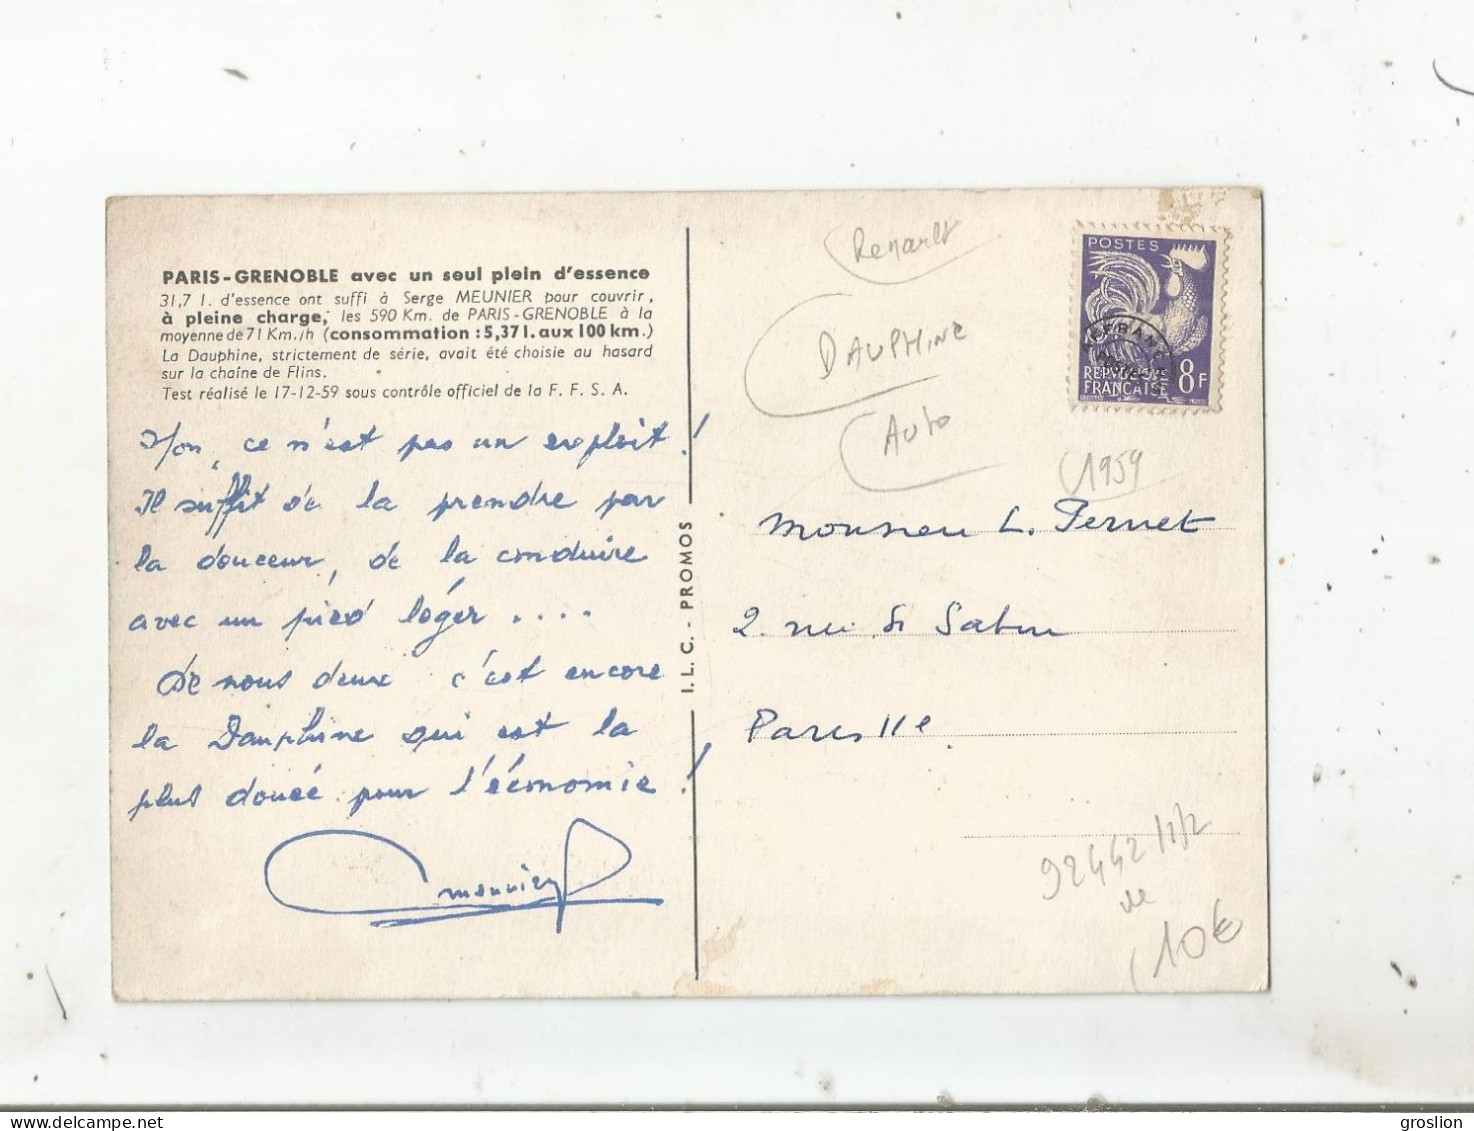 RENAULT DAUPHINE PARIS GRENOBLE AVEC UN SEUL PLEIN D'ESSENCE 1959 - Passenger Cars